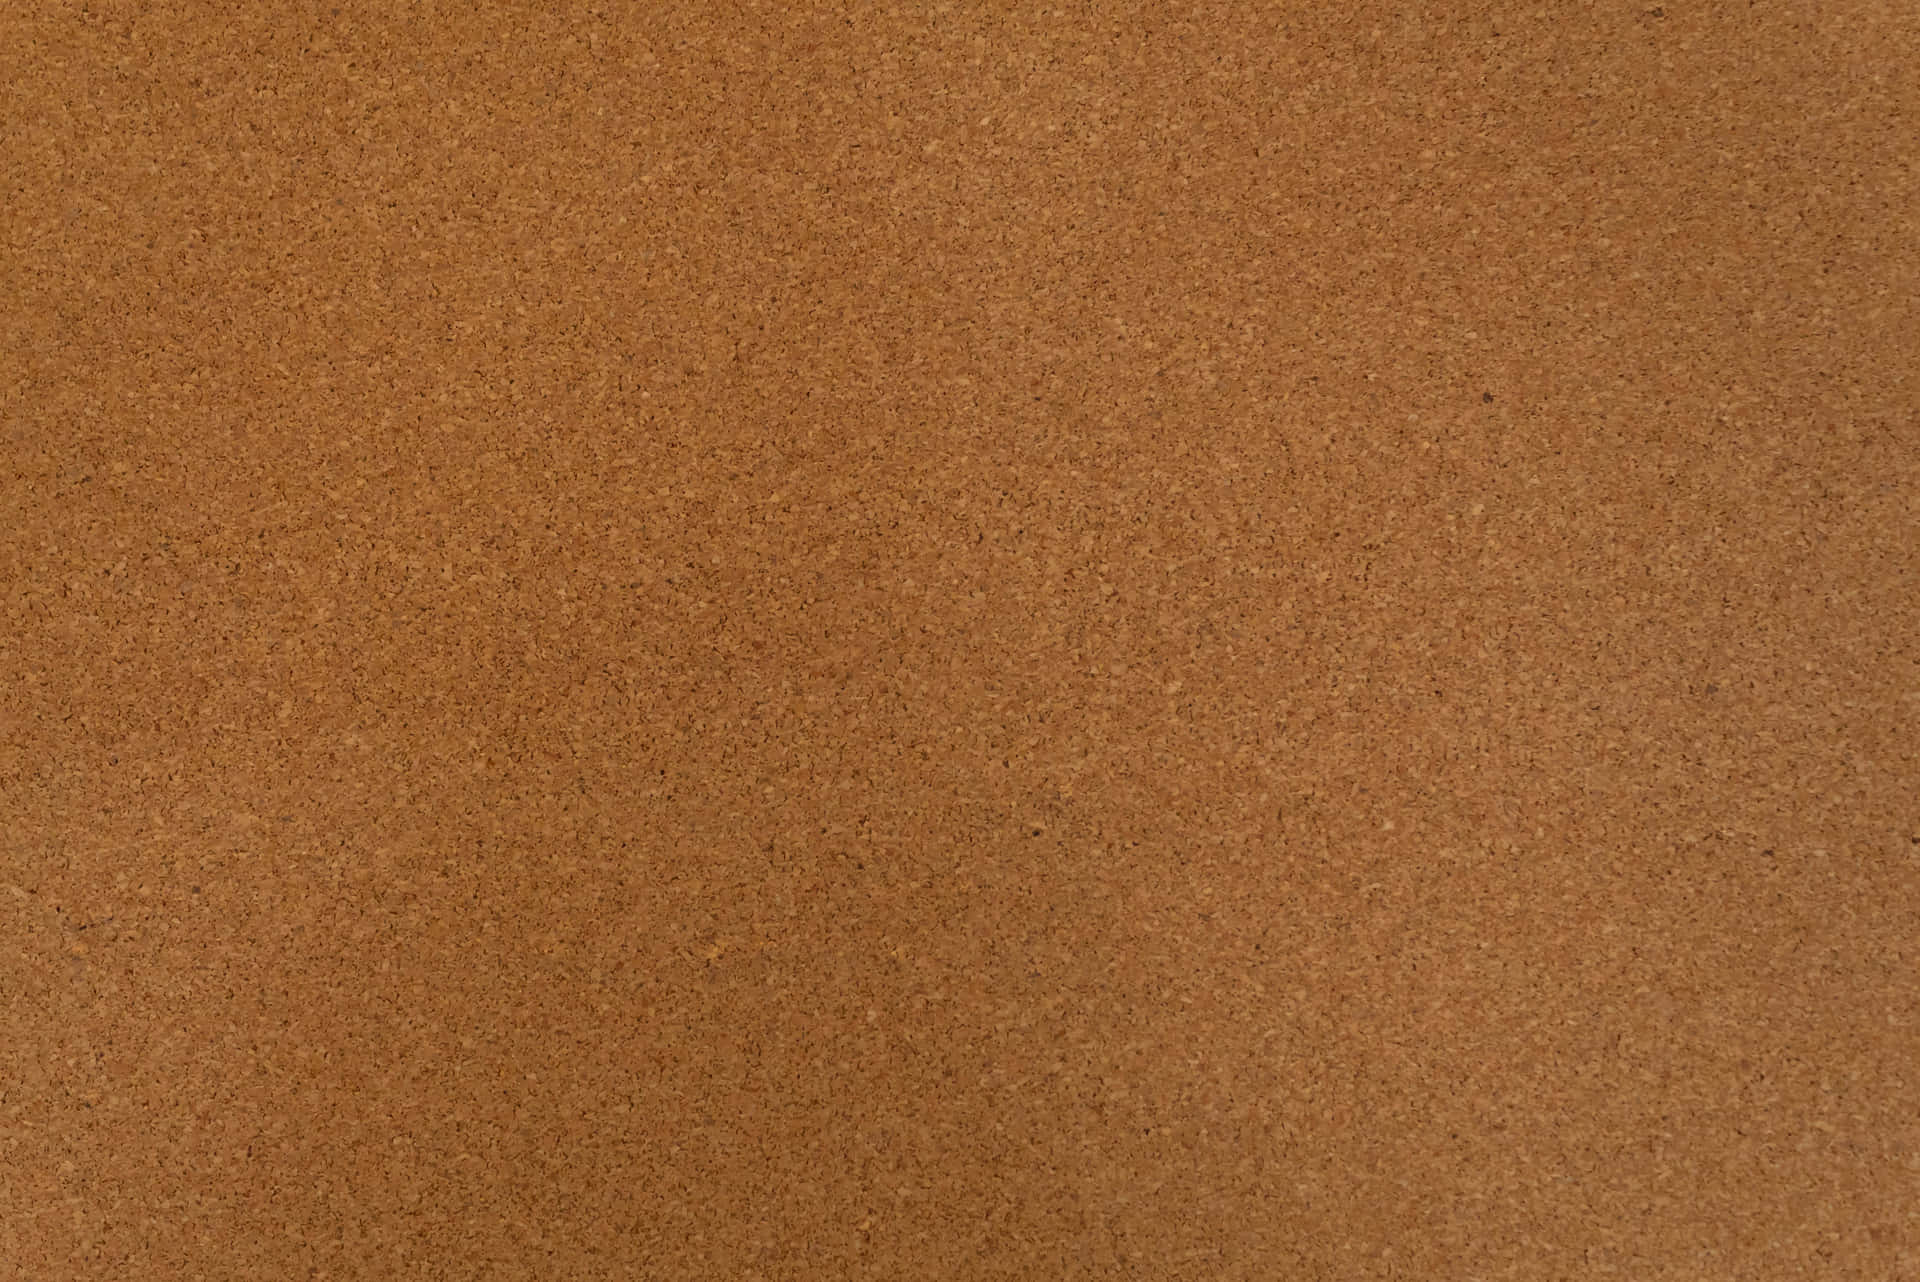 Brown Texture 4893 X 3267 Wallpaper Wallpaper